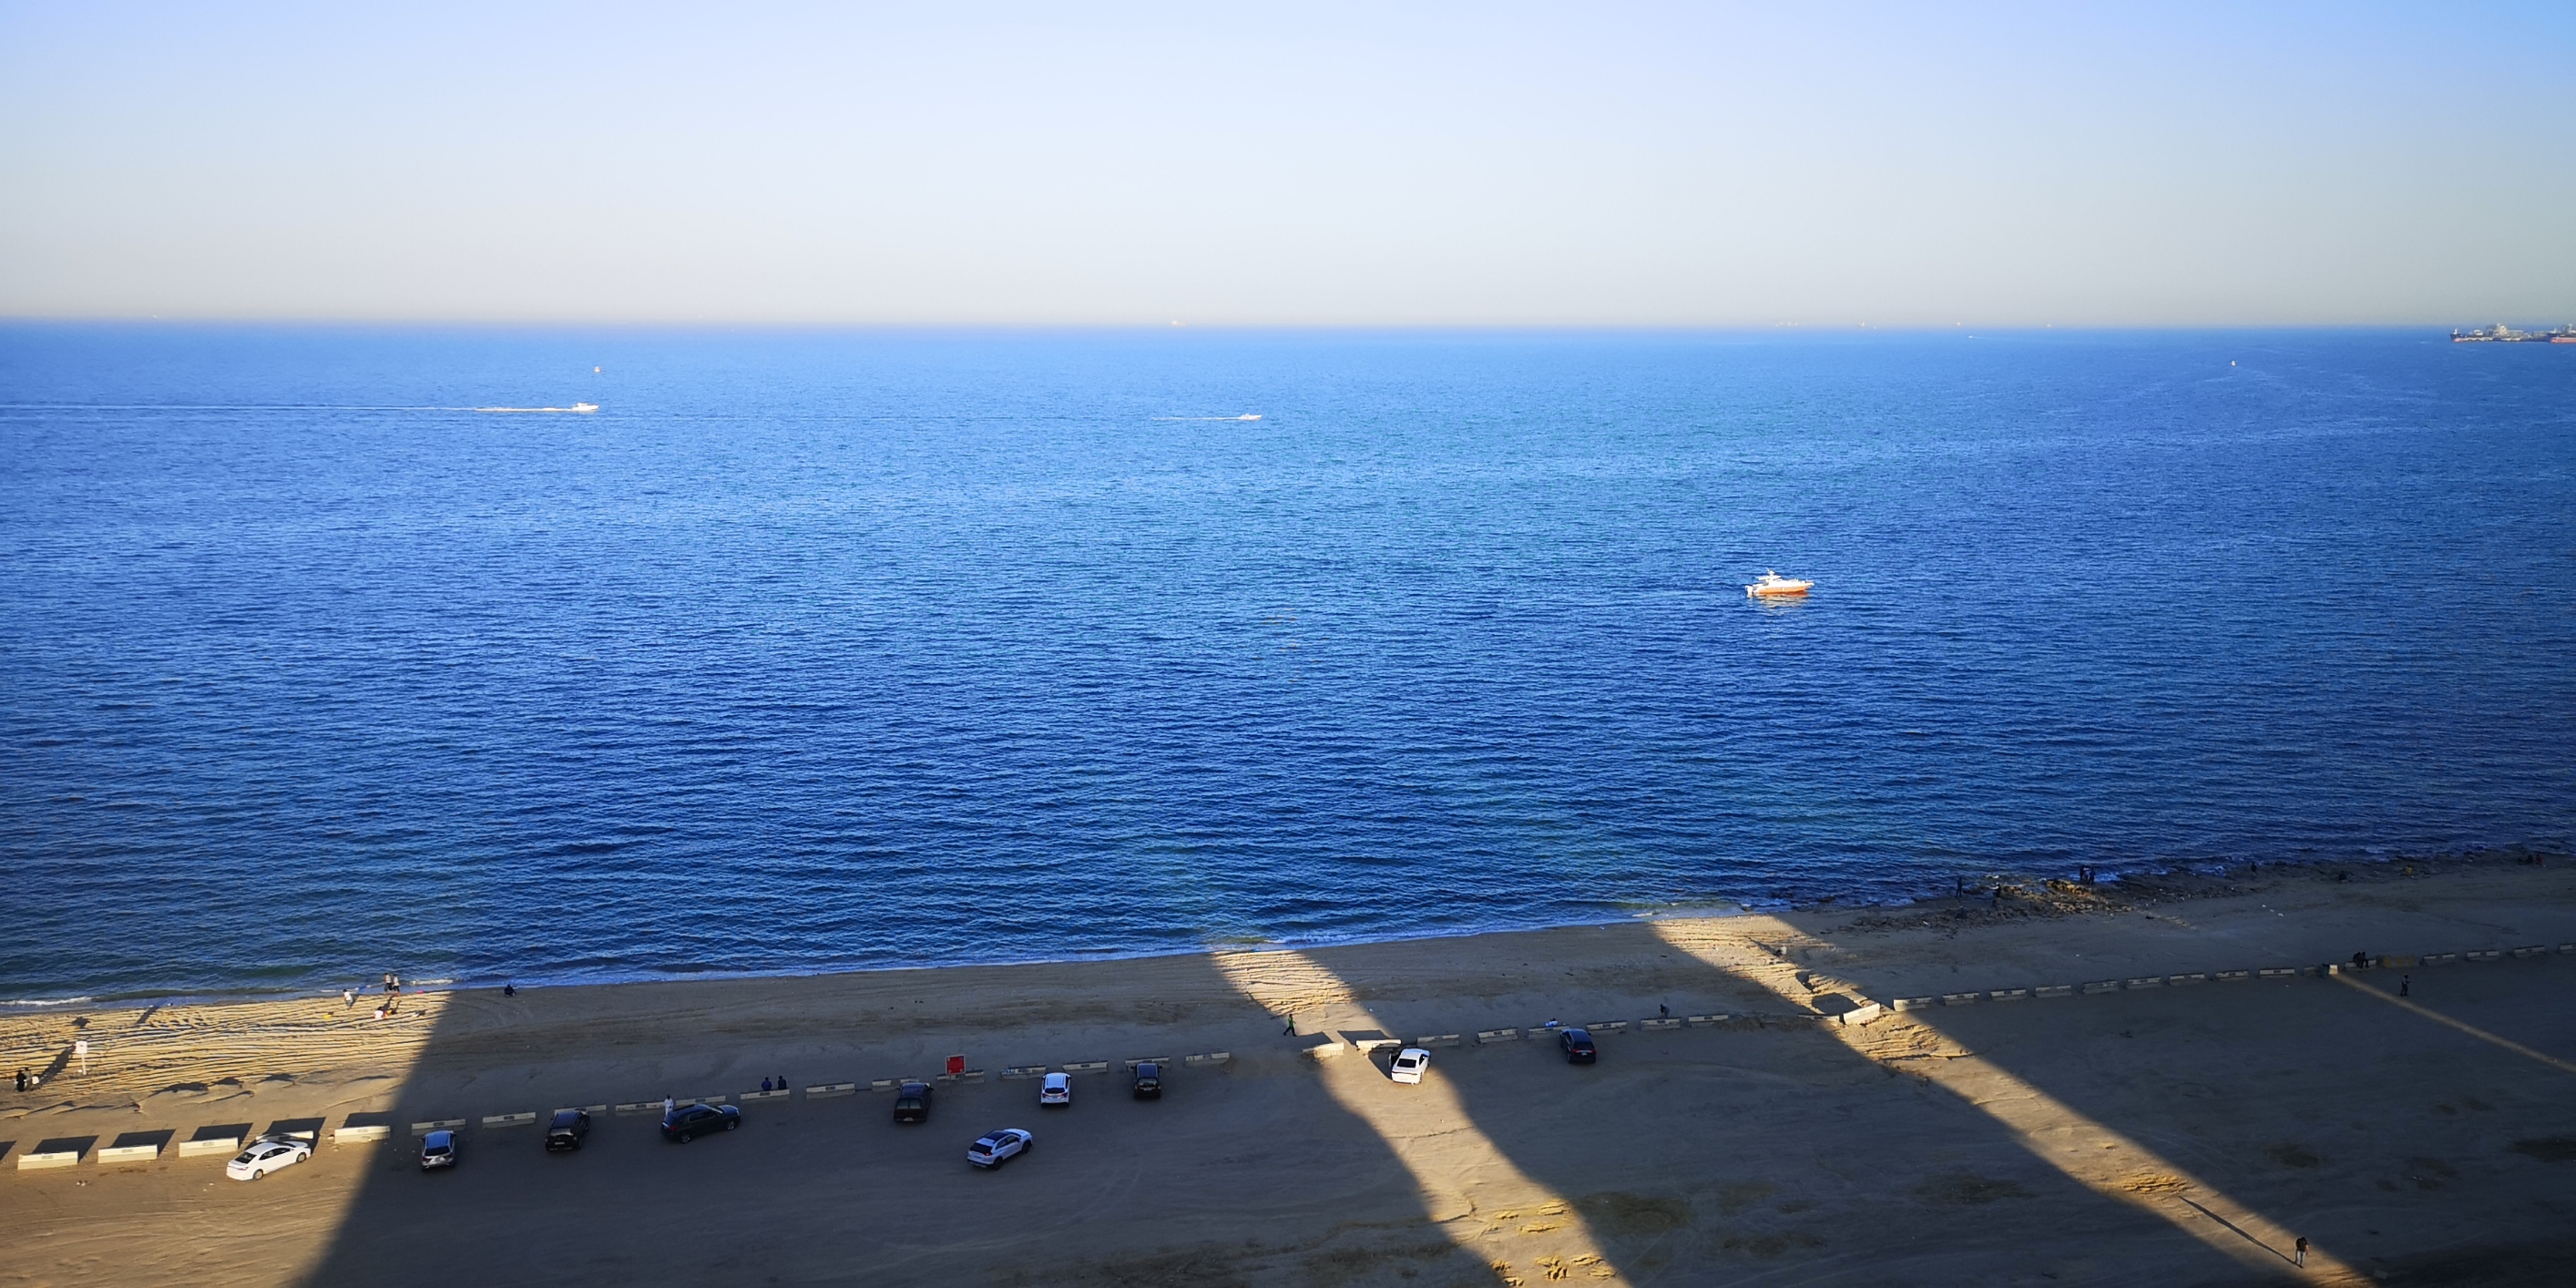 科威特，海湾石油国家。大部分区域靠近海岸线。渔业资源丰富，在没有发现石油前，他们靠渔业为生，珍珠产业